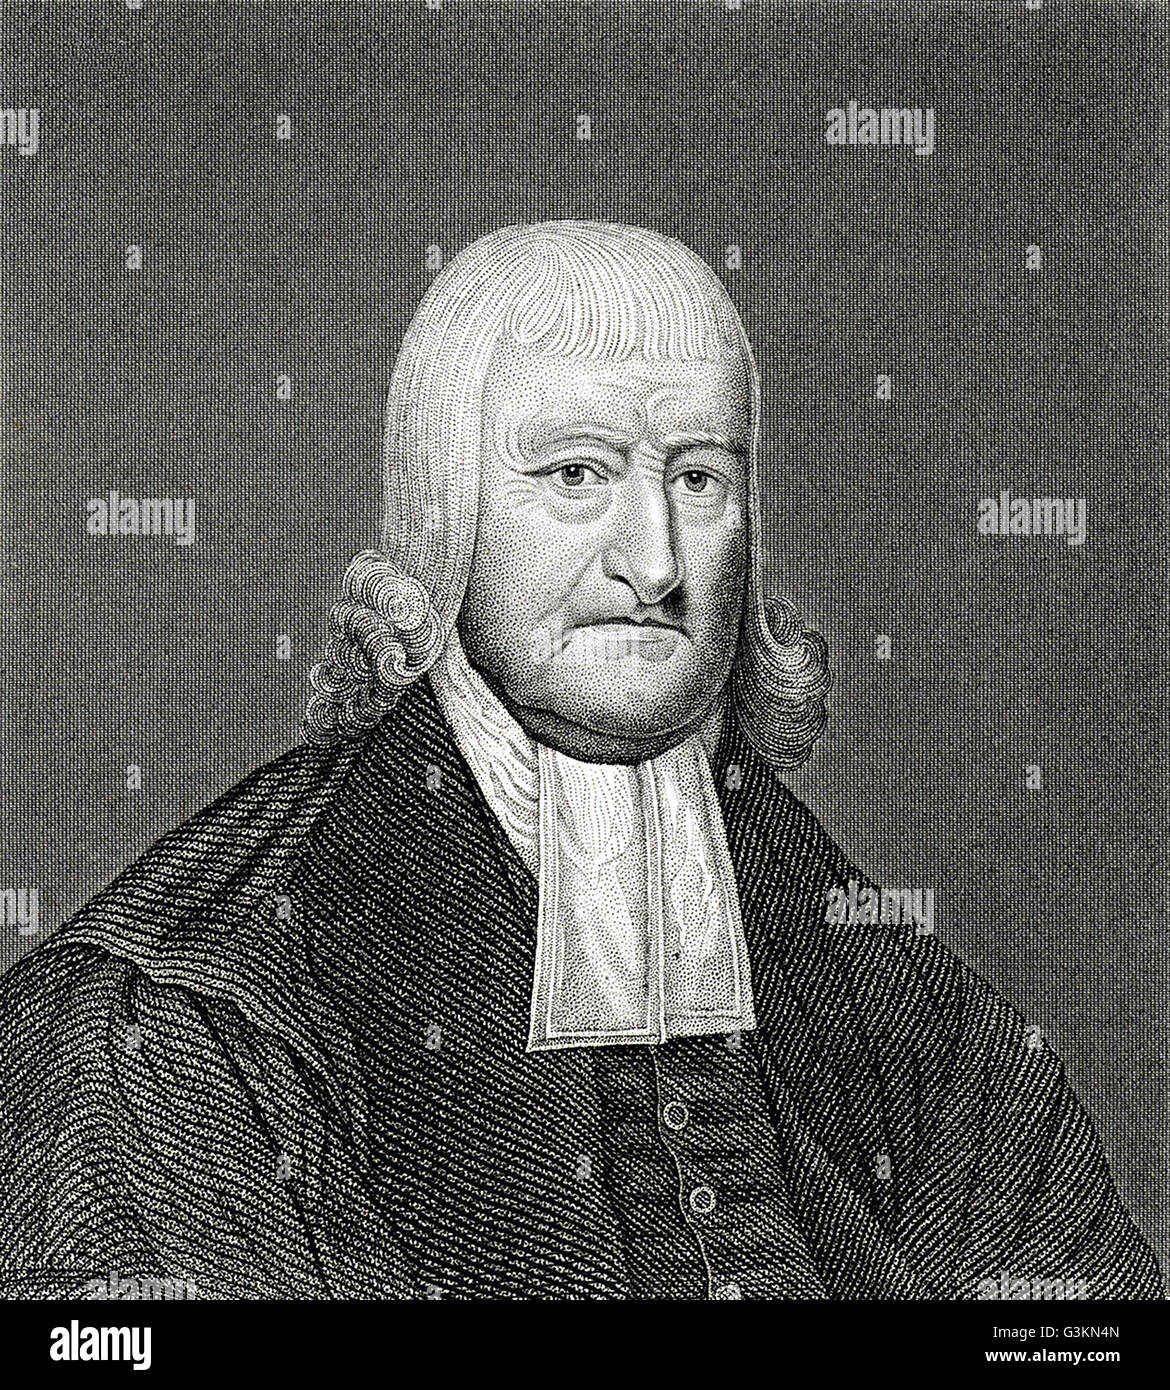 John Livingston, 1746 - 1825 Stock Photo